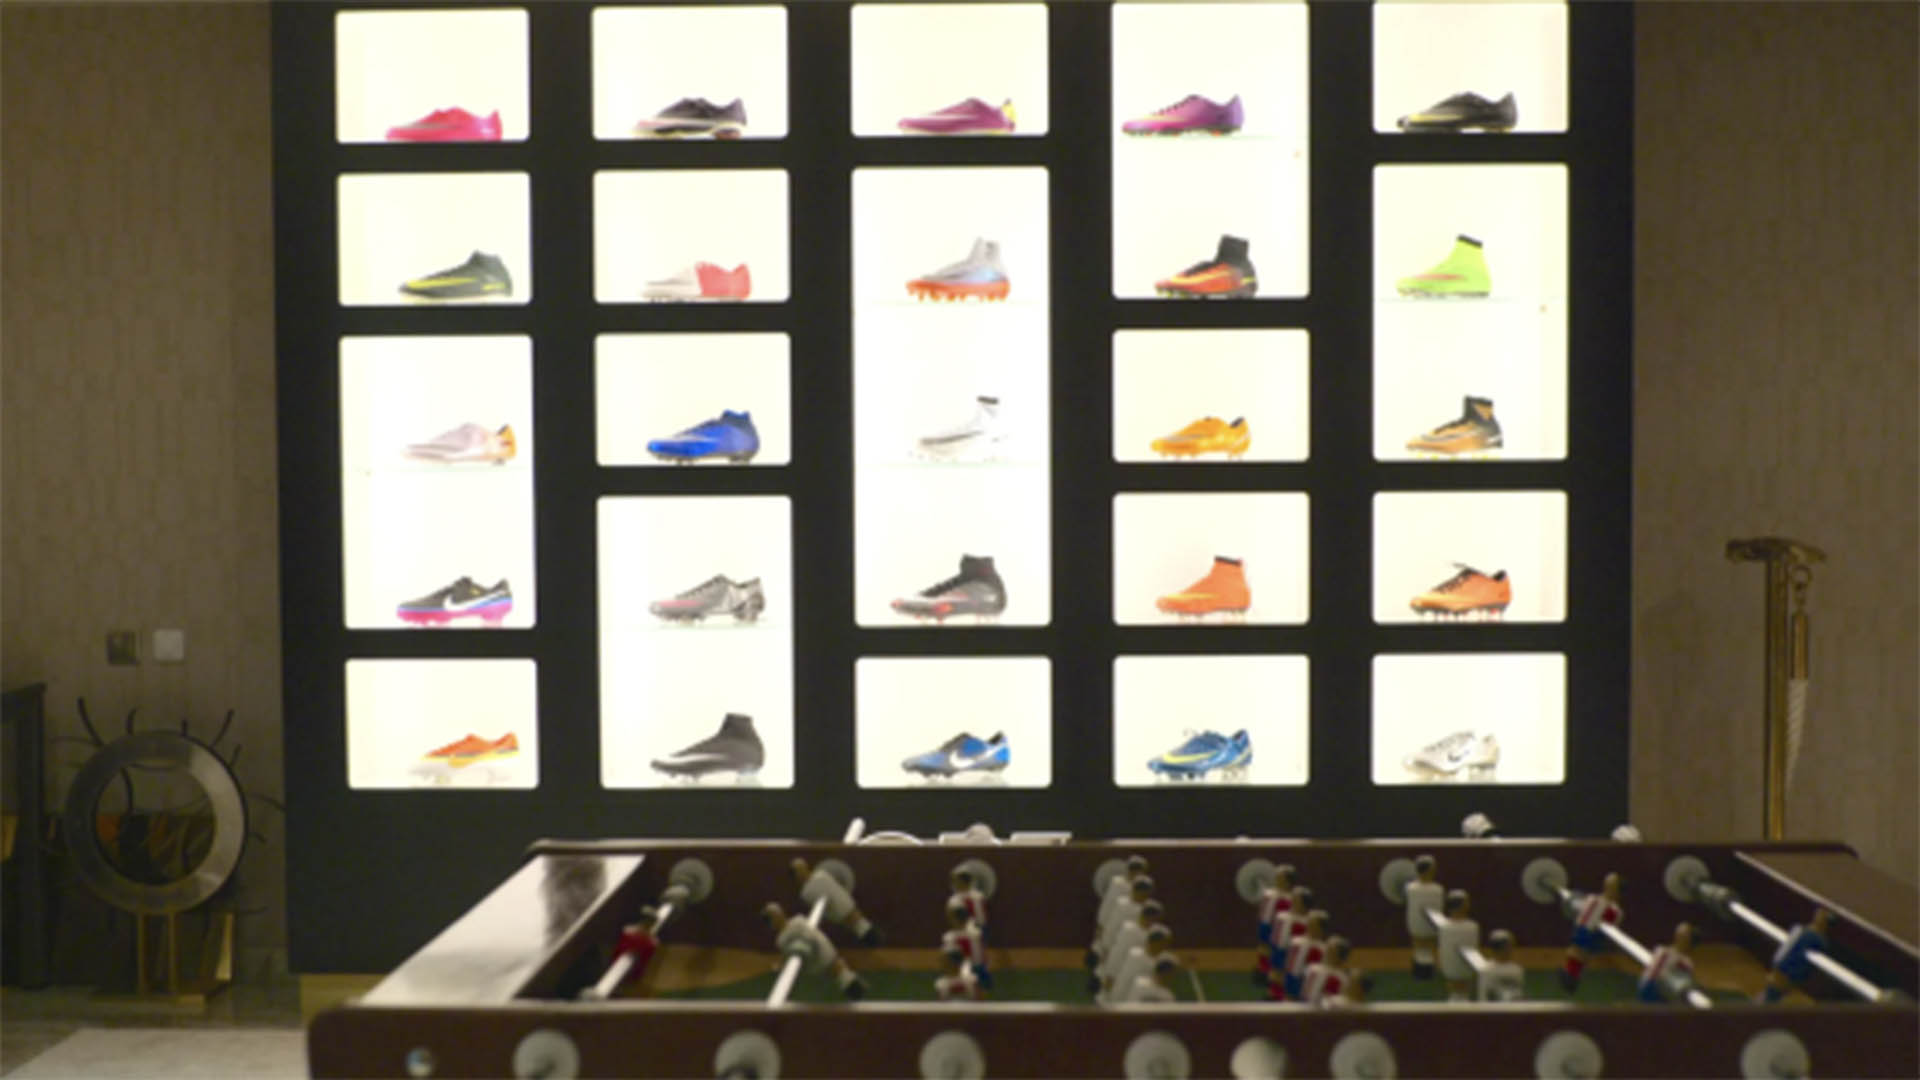 La lujosa colección de botines que decora la sala de estar (Captura Netflix)